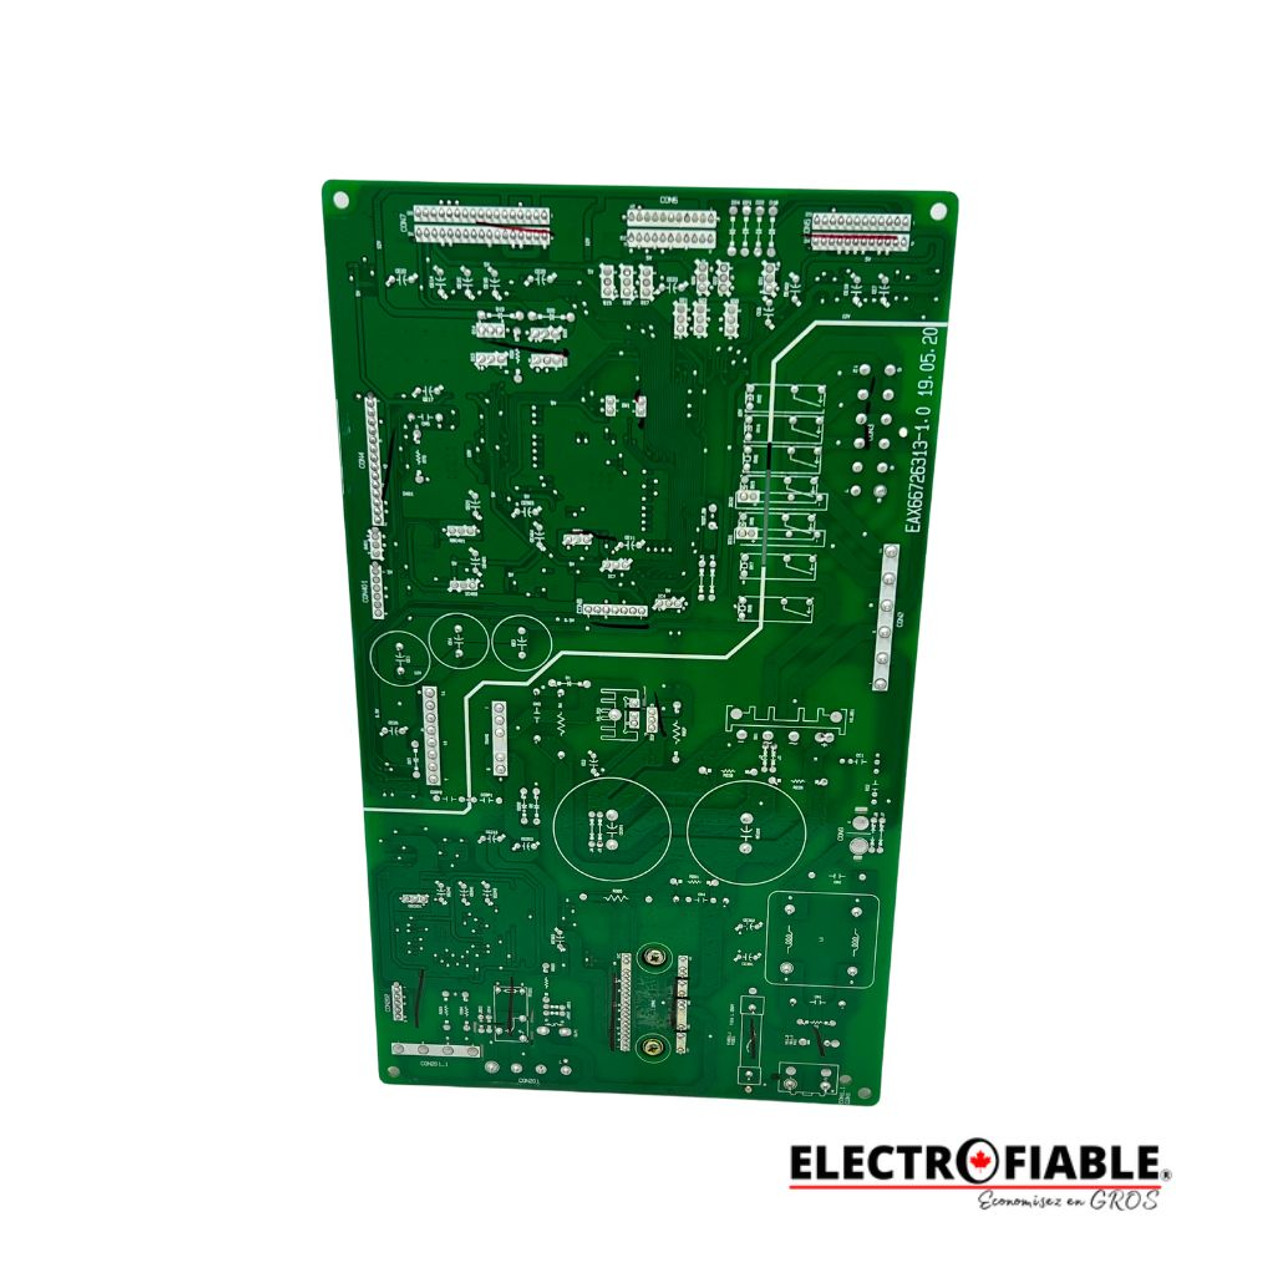 EBR30299303 LG Refrigerator Main Control Board